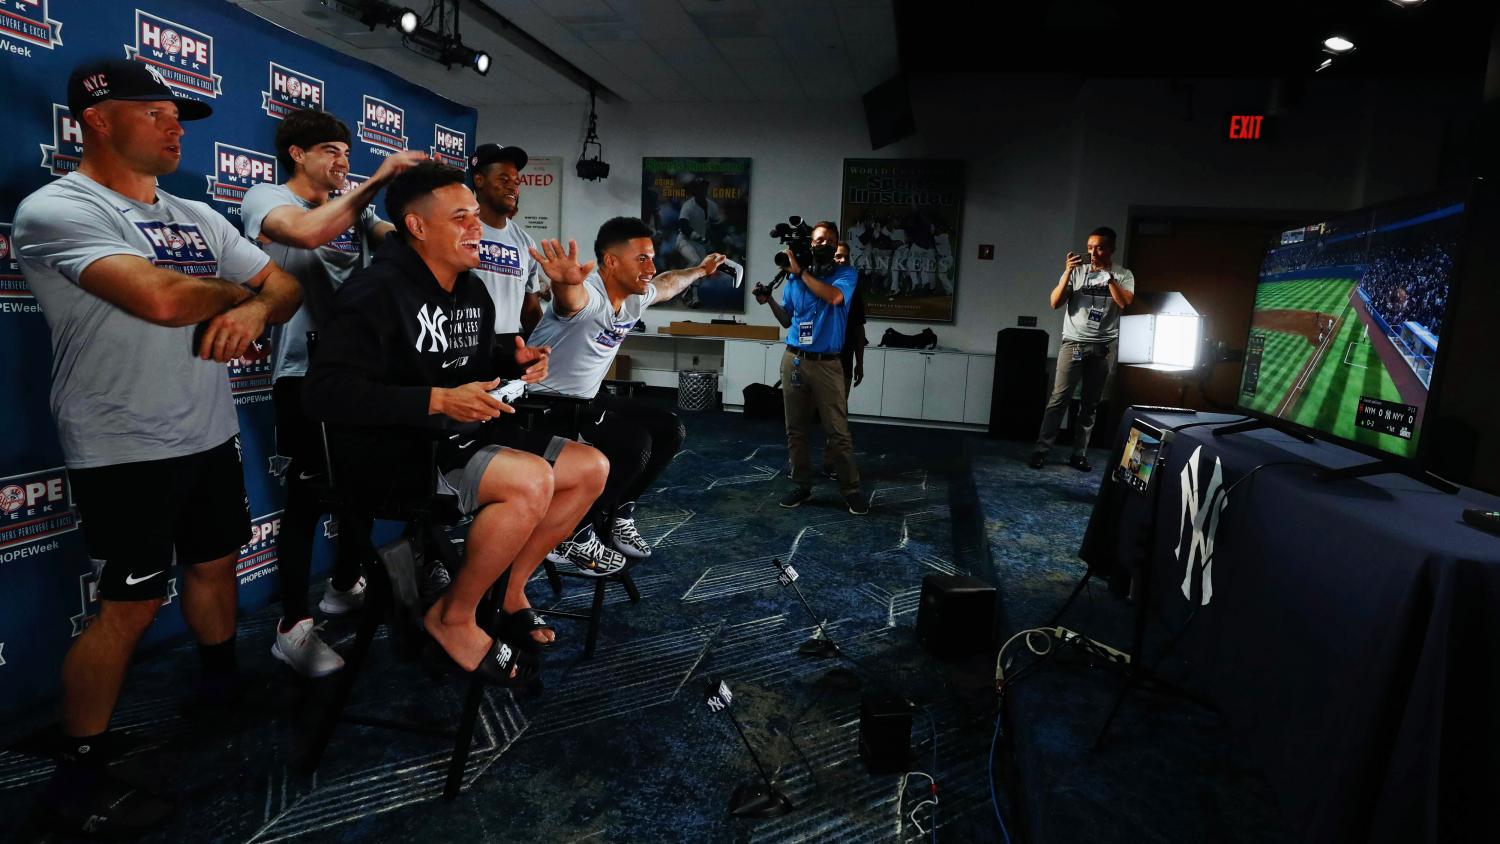 Yankees players Wade, Severino, Urshela, Torres, and Gardner talking with Luke